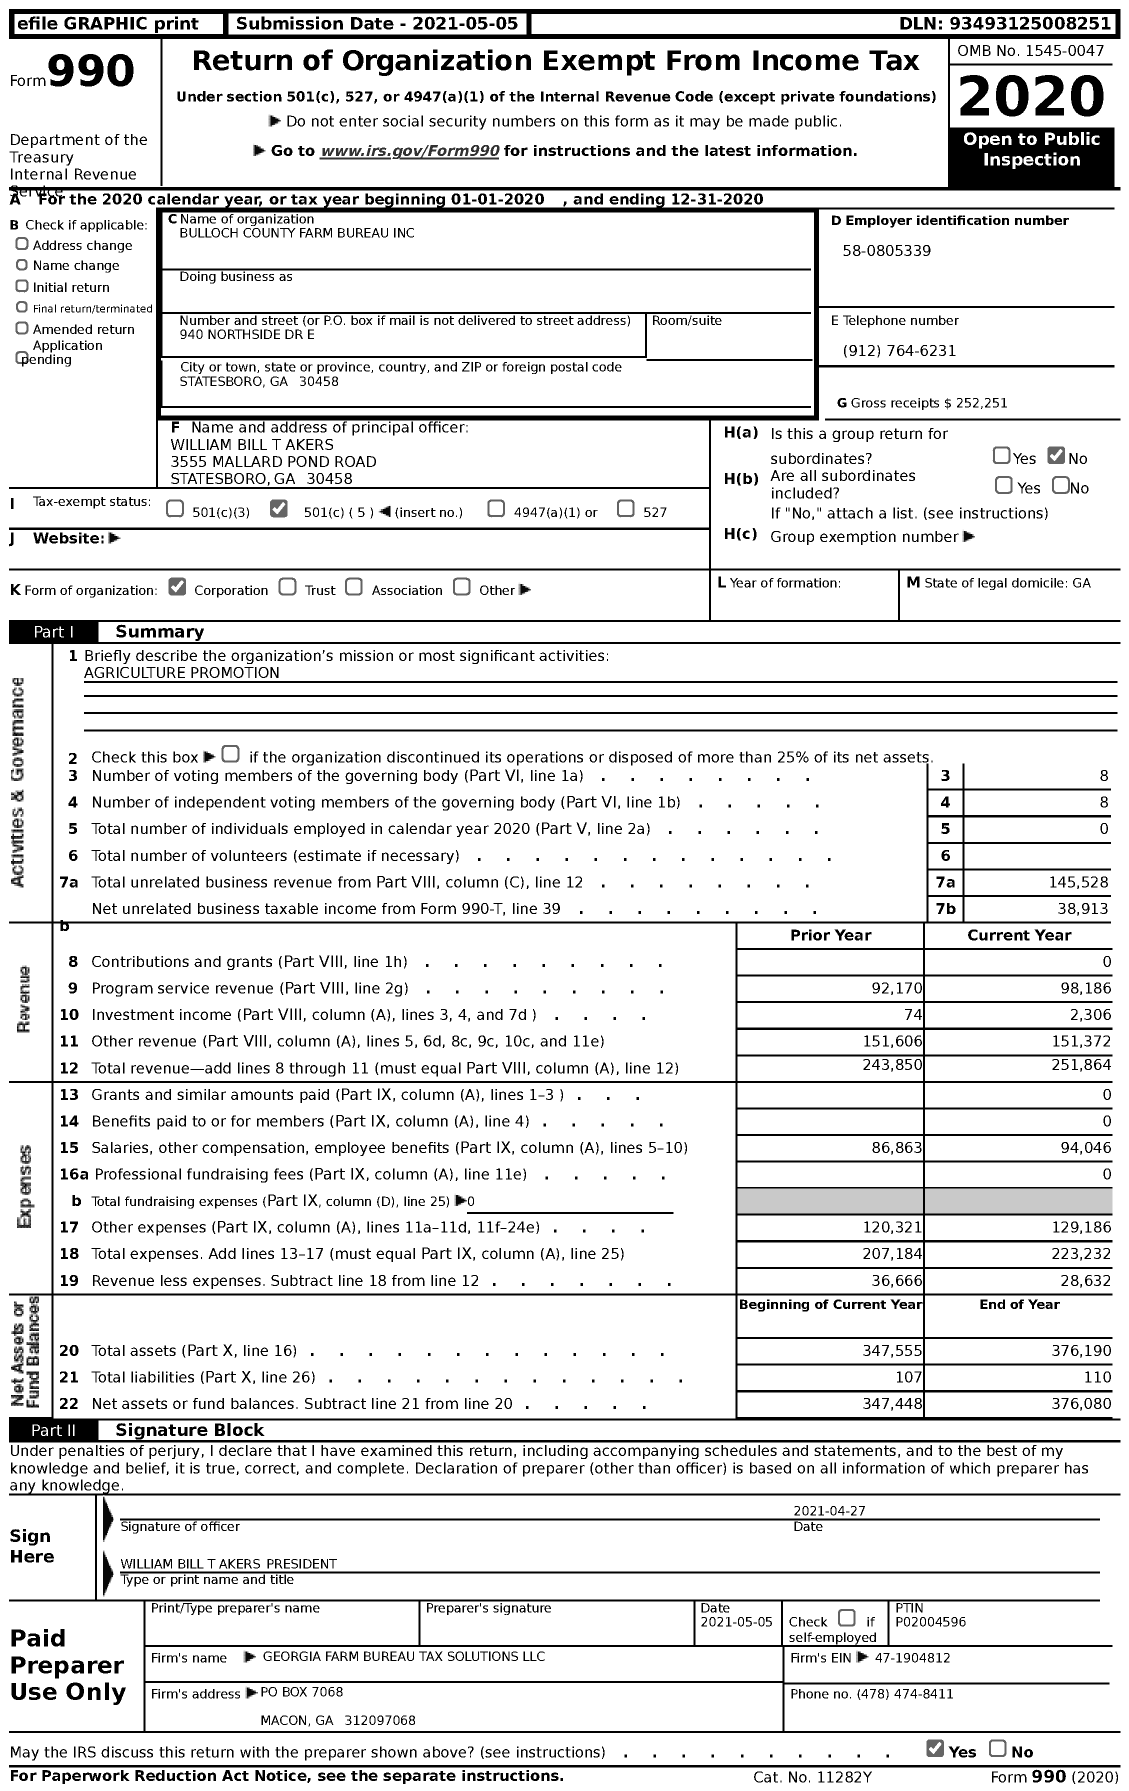 Image of first page of 2020 Form 990 for Georgia Farm Bureau Federation - Bulloch County Farm Bureau